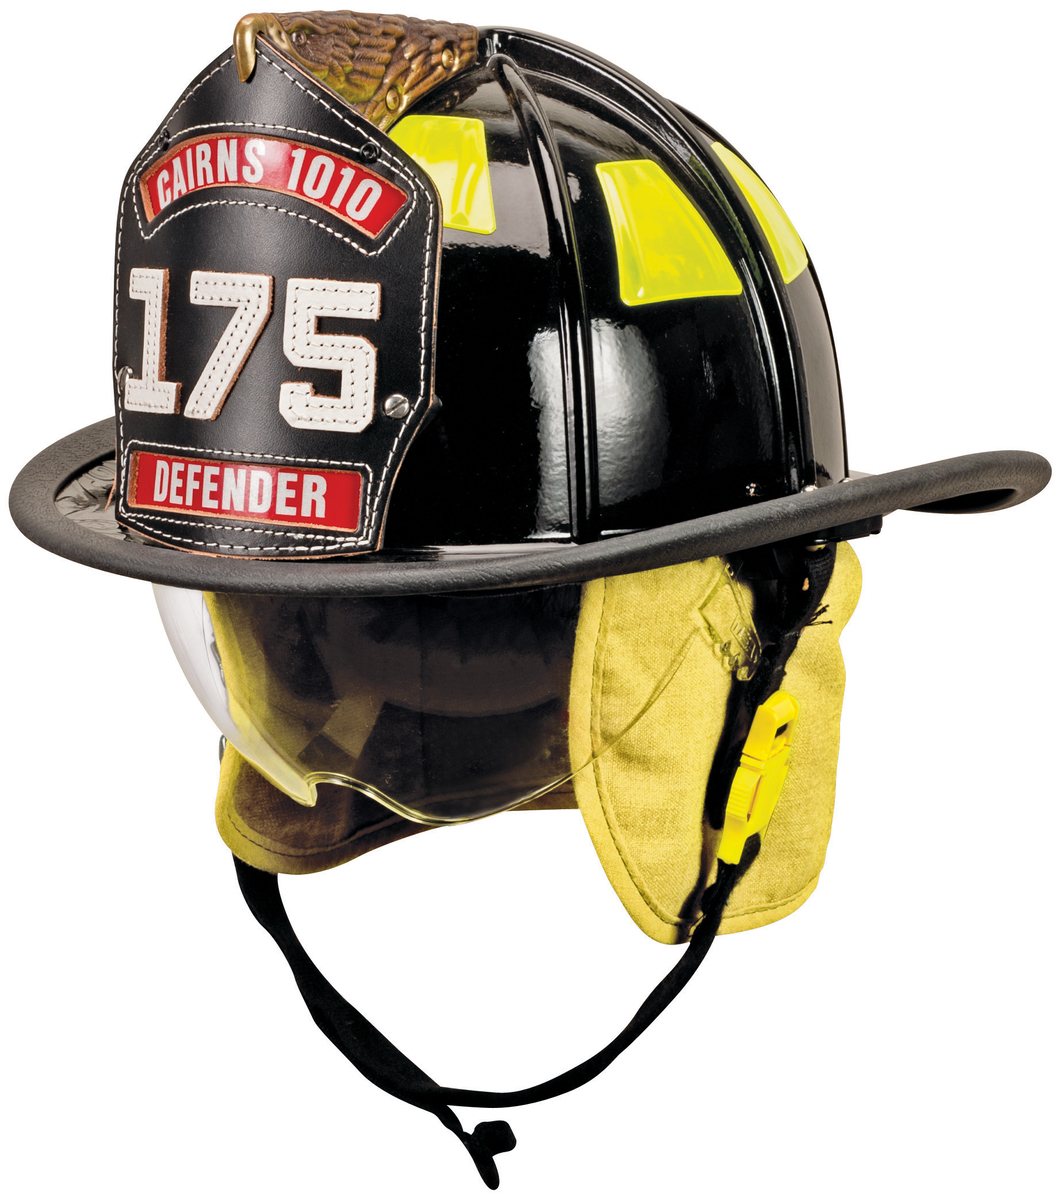 MSA Black Deluxe Leather Cairns® 1010 Fire Helmet